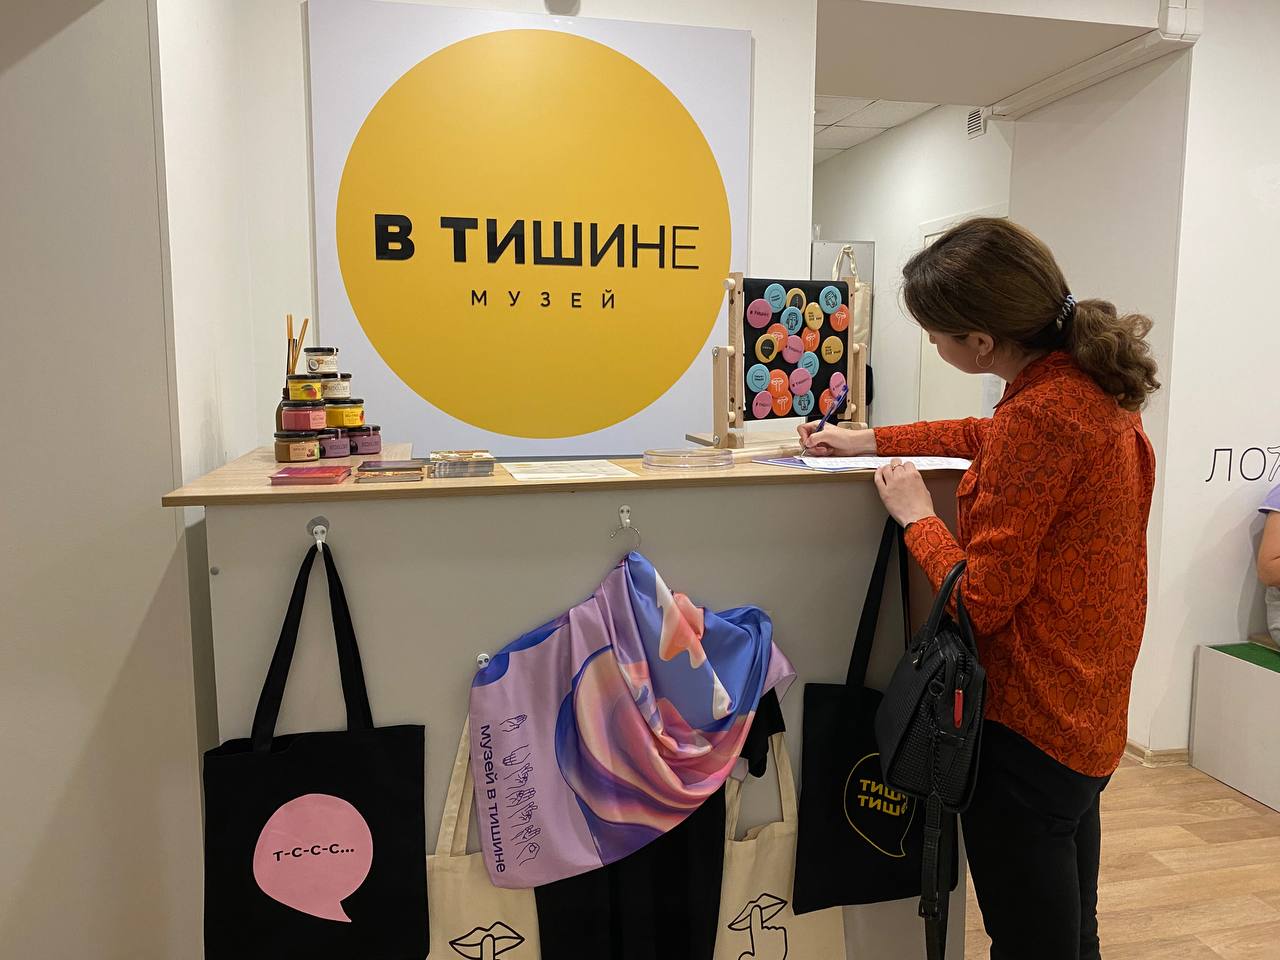 Тишина окрыляет: петербургские туроператоры познакомились с интерактивным музеем, у которого важная социальная миссия